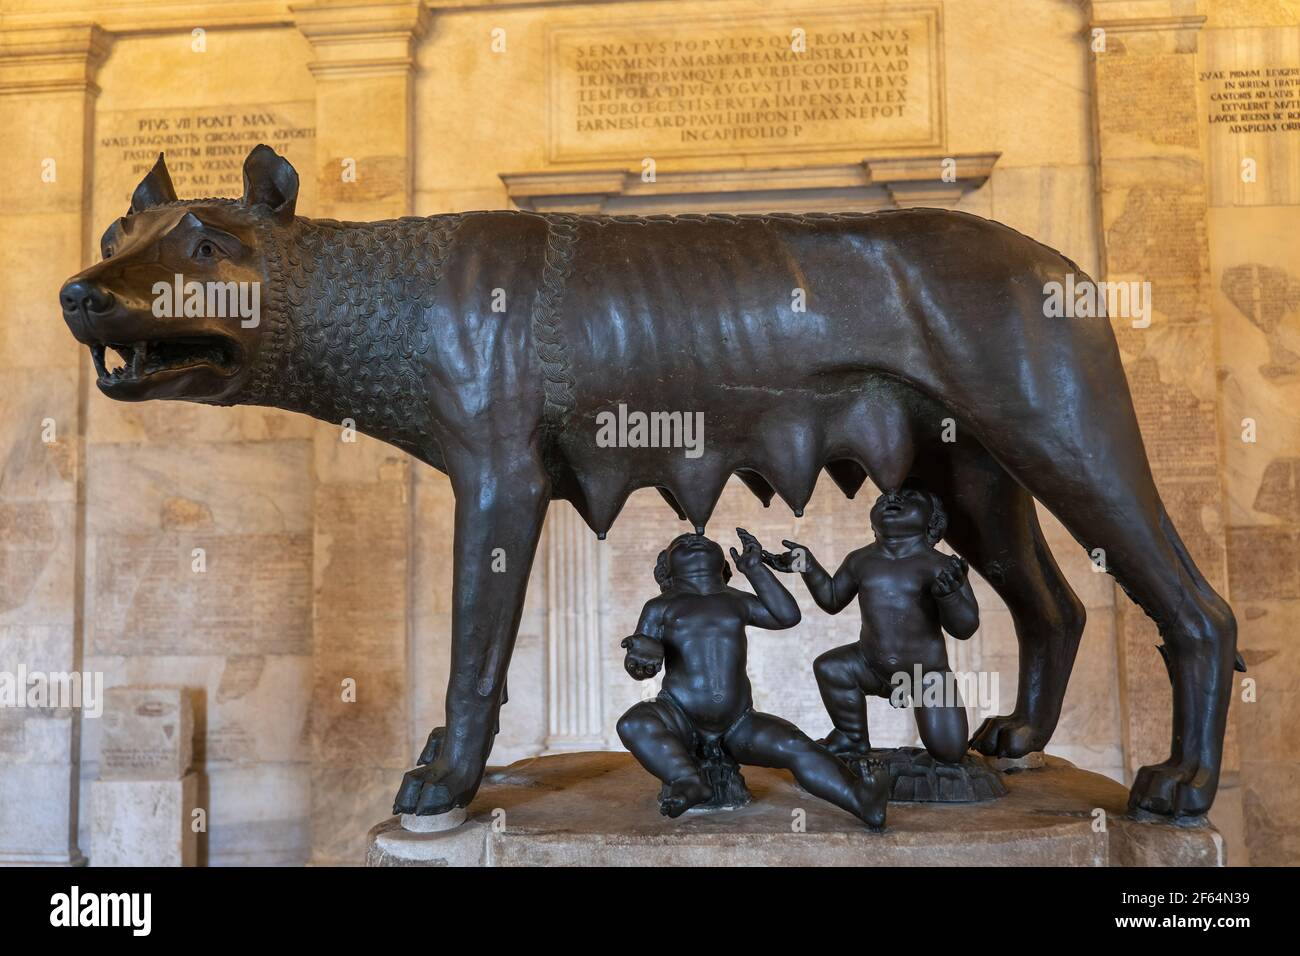 Loup du Capitole (Lupa Capitolina) avec des jumeaux Romulus et Remus, sculpture en bronze dans les musées du Capitole (Musei Capitolini), Rome, Italie Banque D'Images